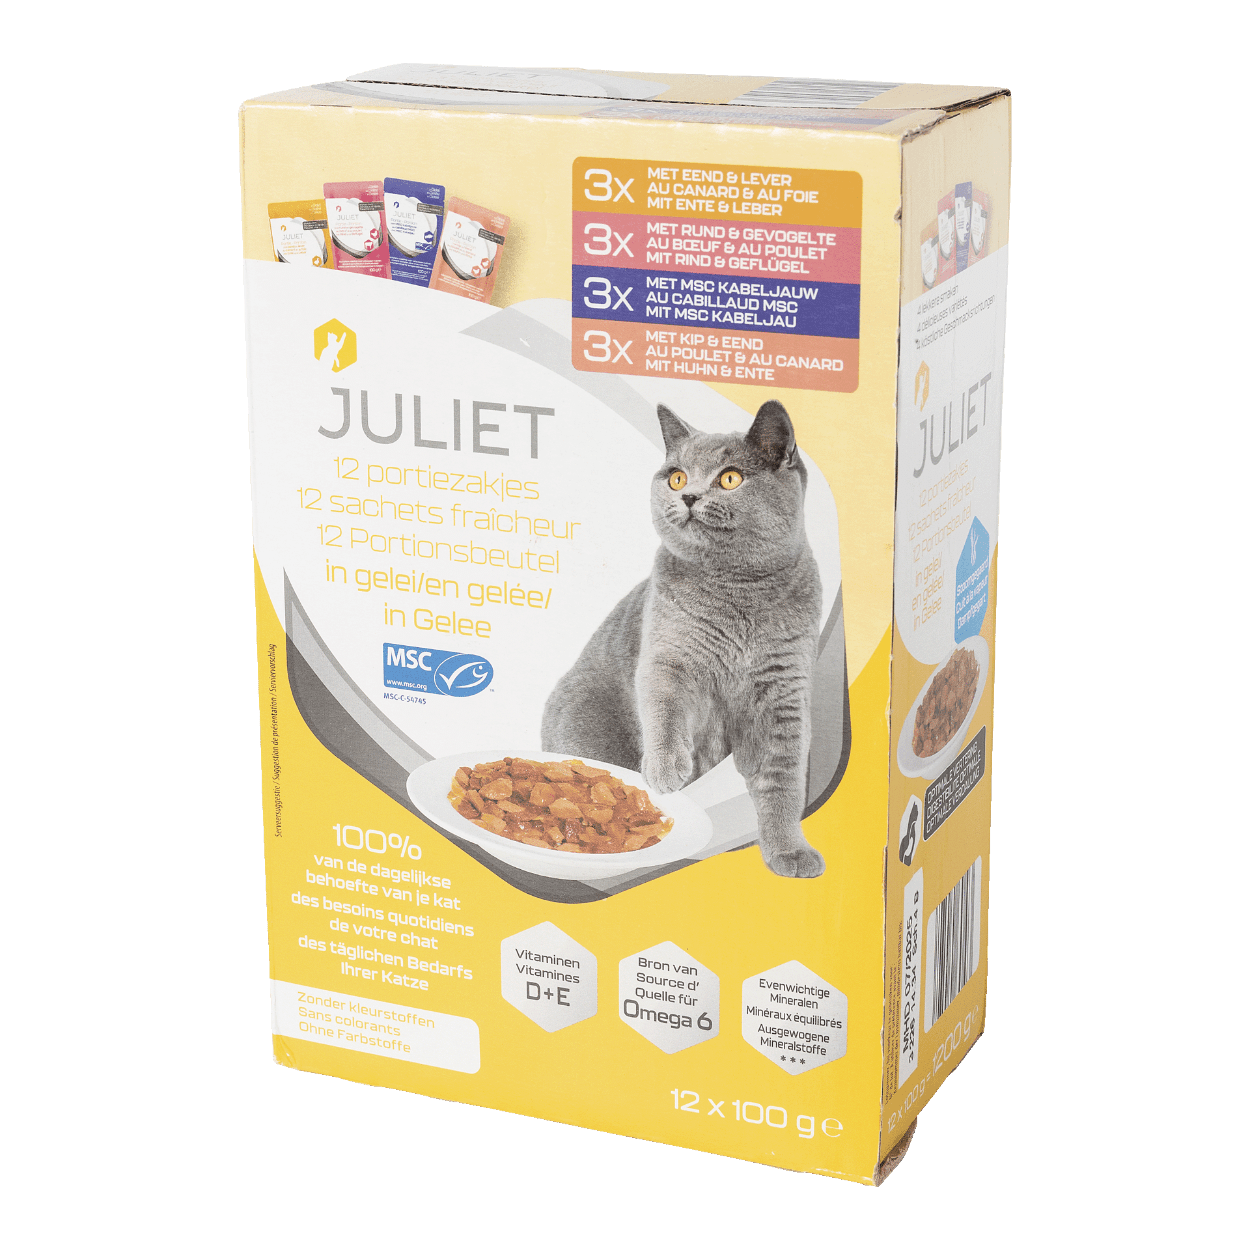 JULIET® Aliment premium pour chats, 12 pcs bon marché chez ALDI